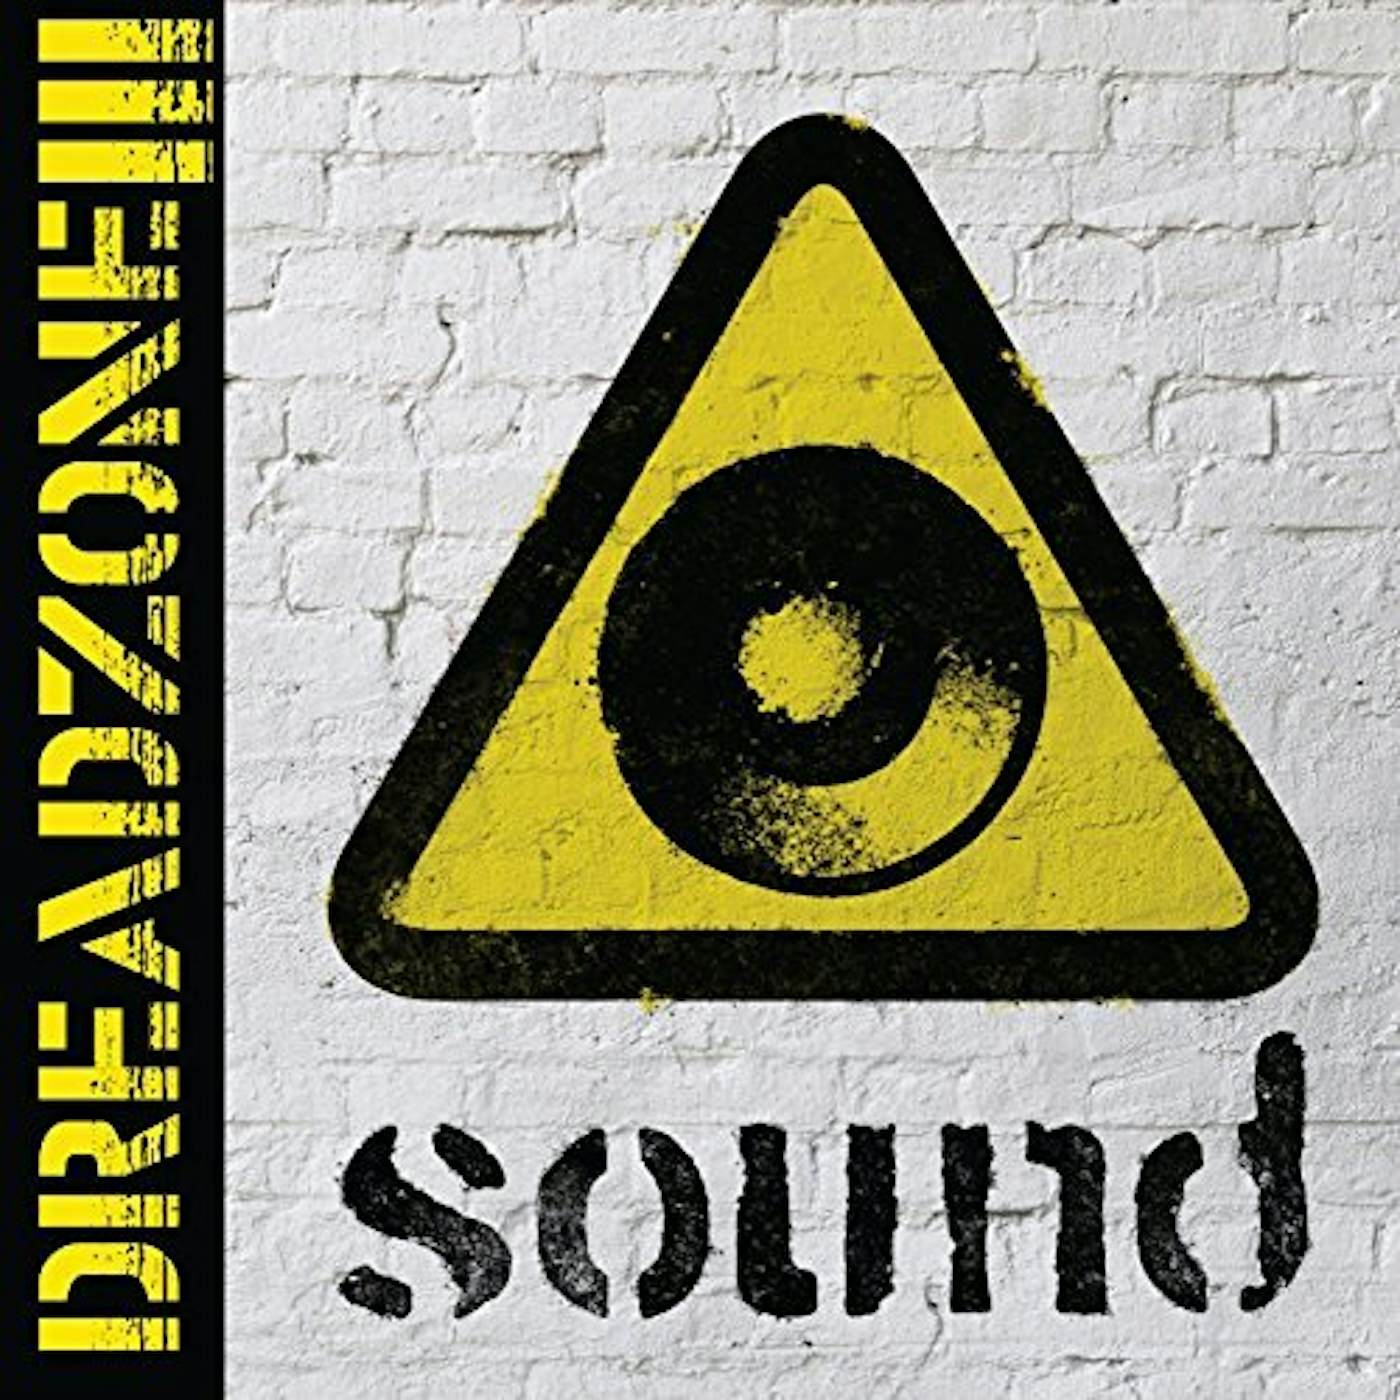 Dreadzone Sound Vinyl Record